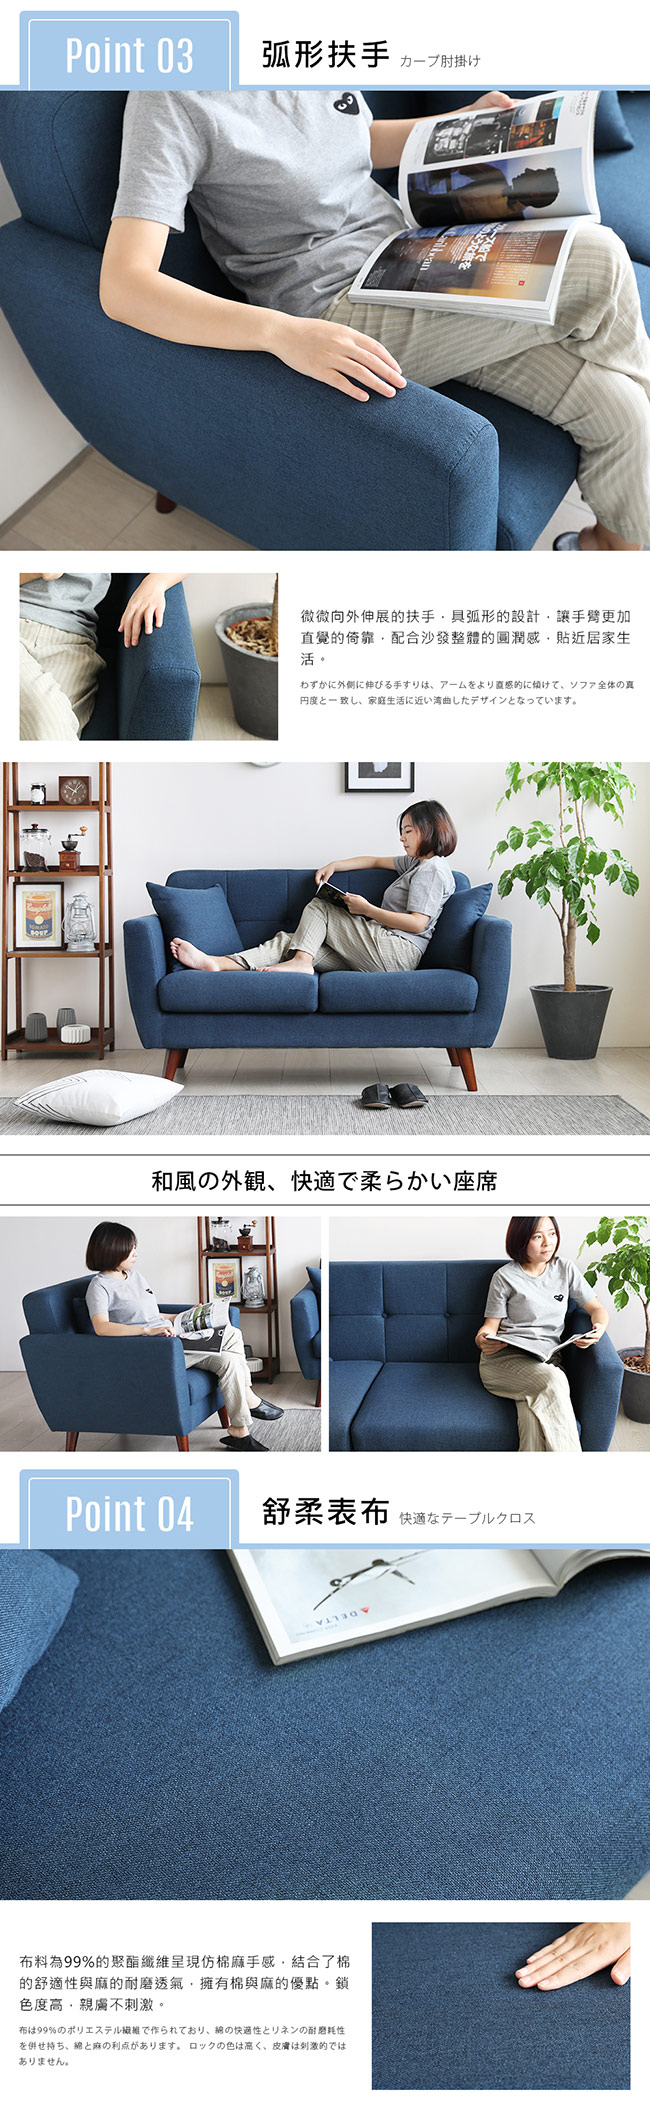 H&D 棠妮日式簡約拉扣造型雙人沙發-3色